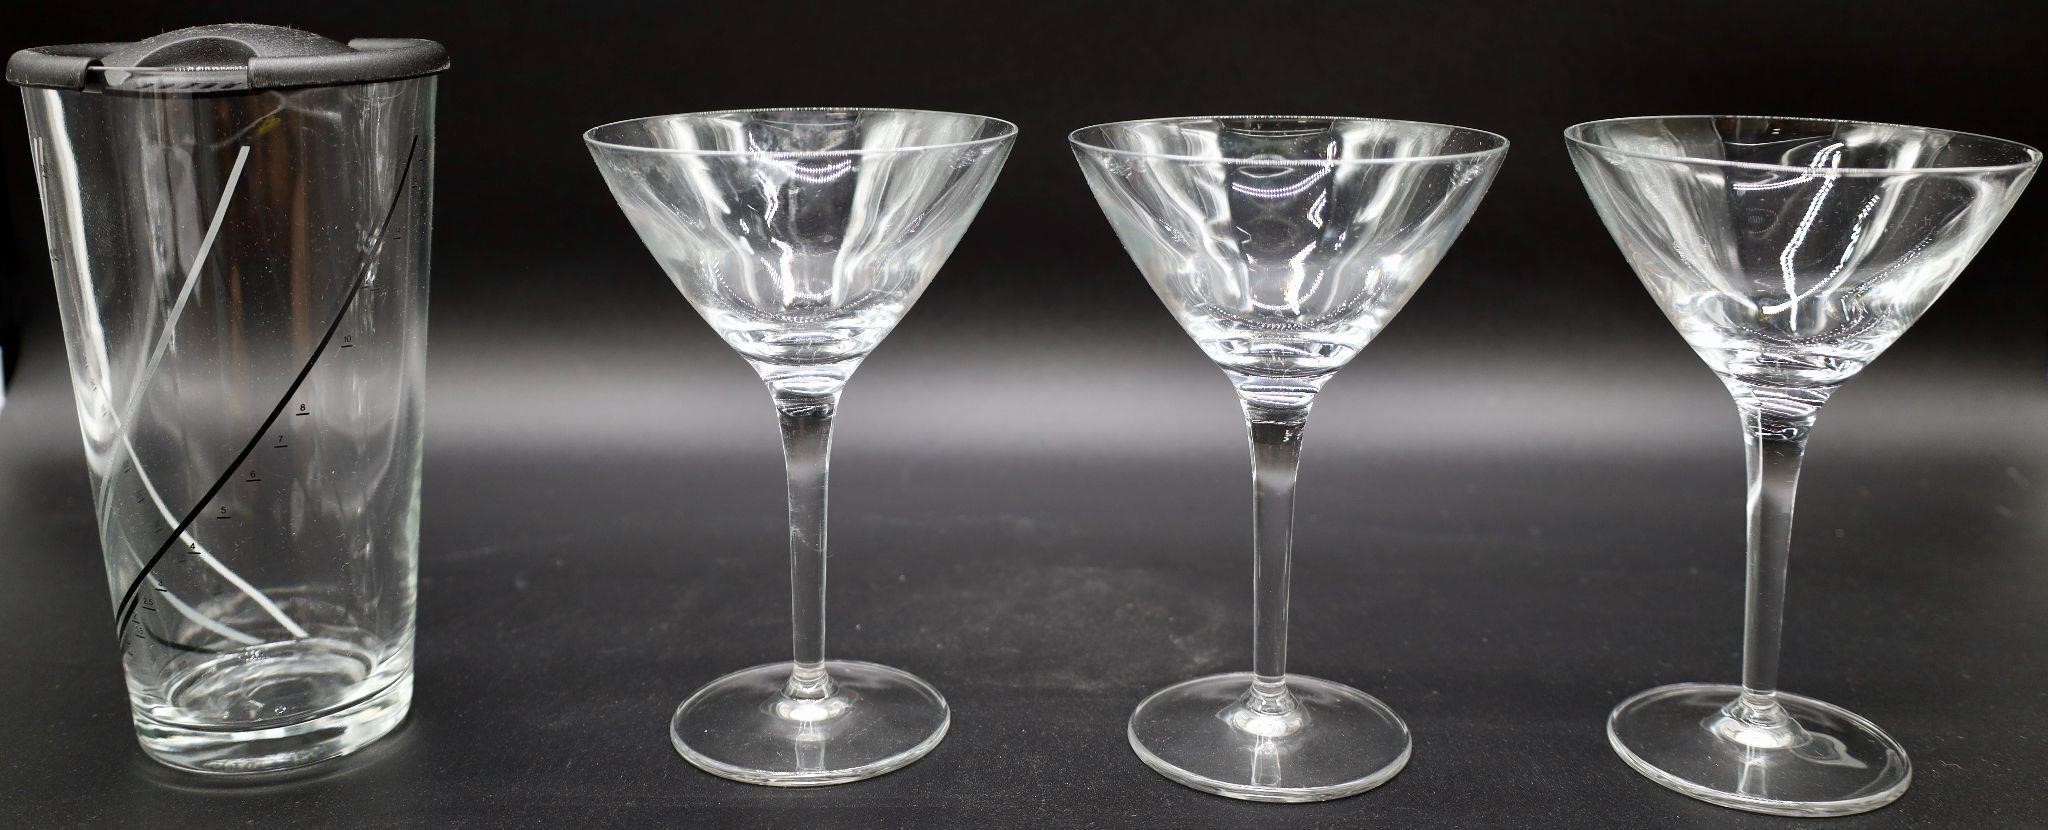 3 Cellini Glass Martini Glasses